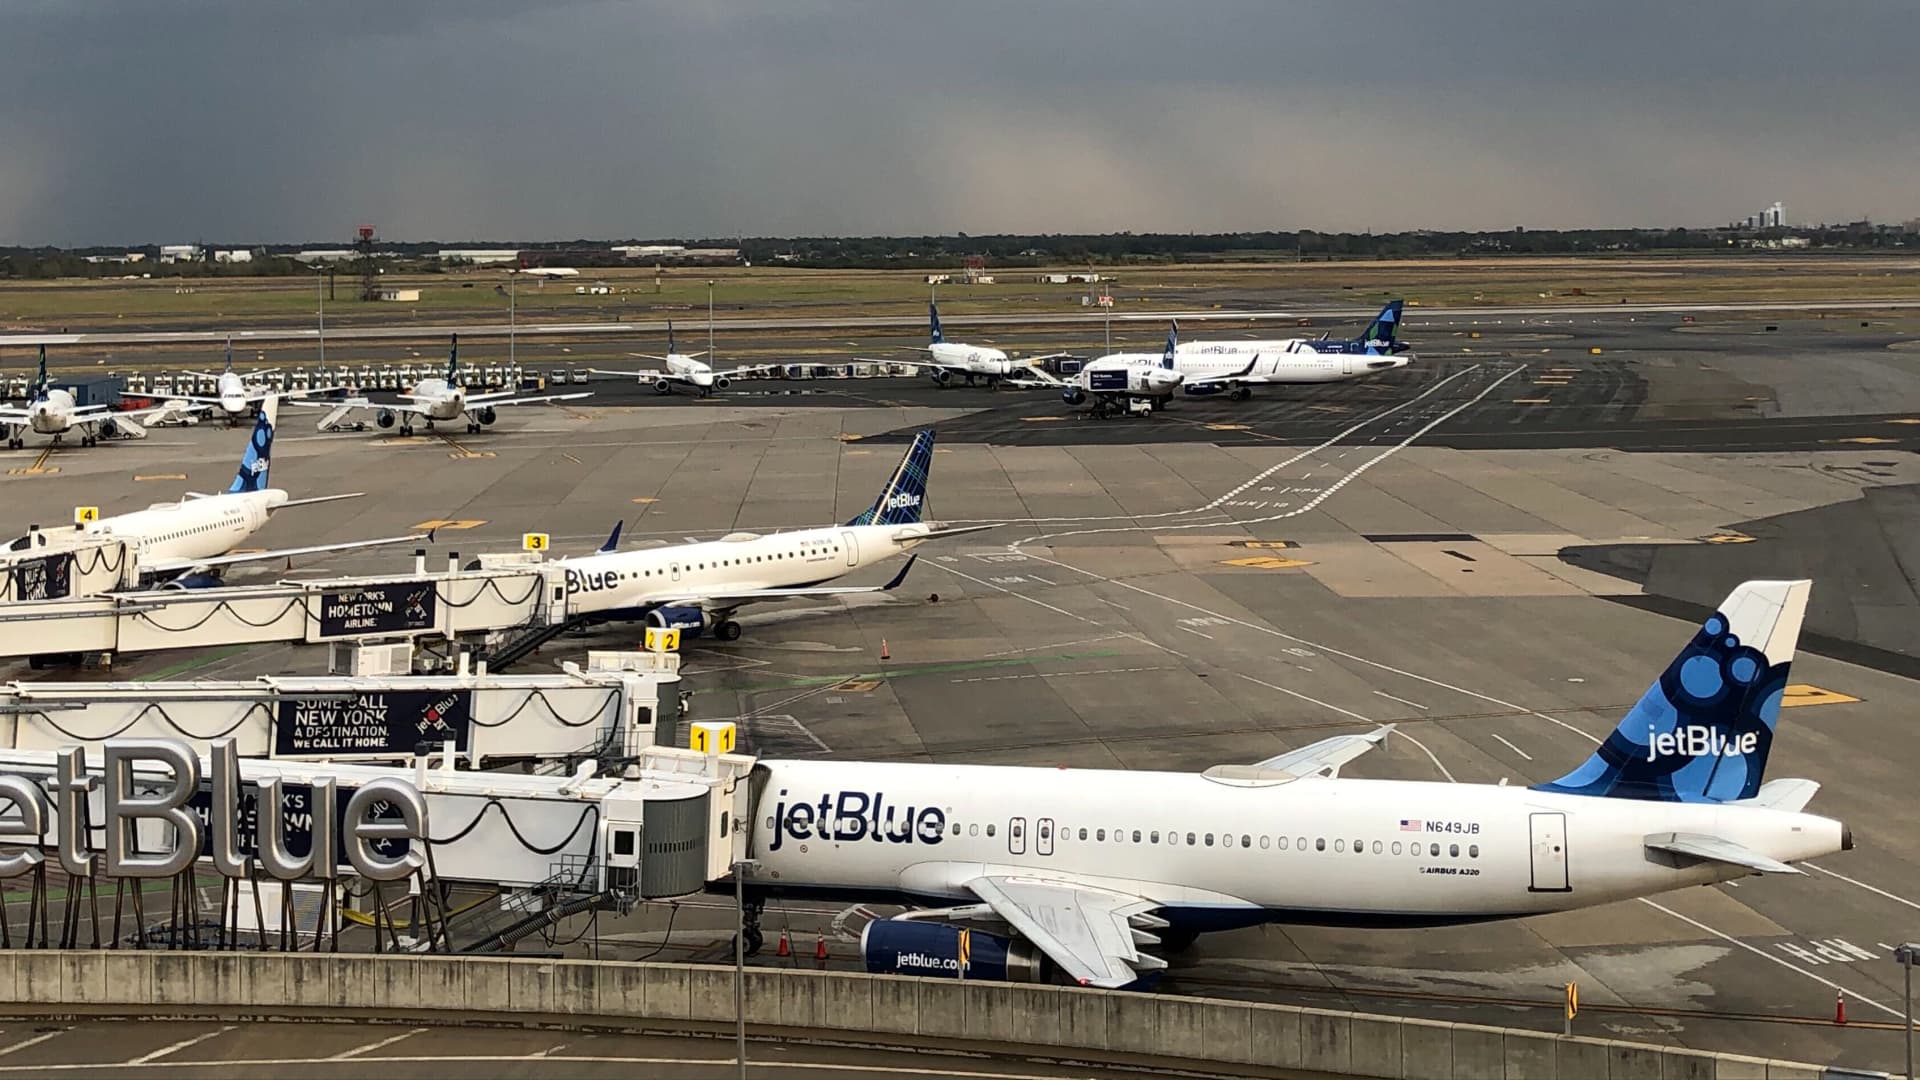 JetBlue fordert die Flugbegleiter dringend auf, Aufträge anzunehmen, da es darum geht, 700 Mitarbeiter einzustellen